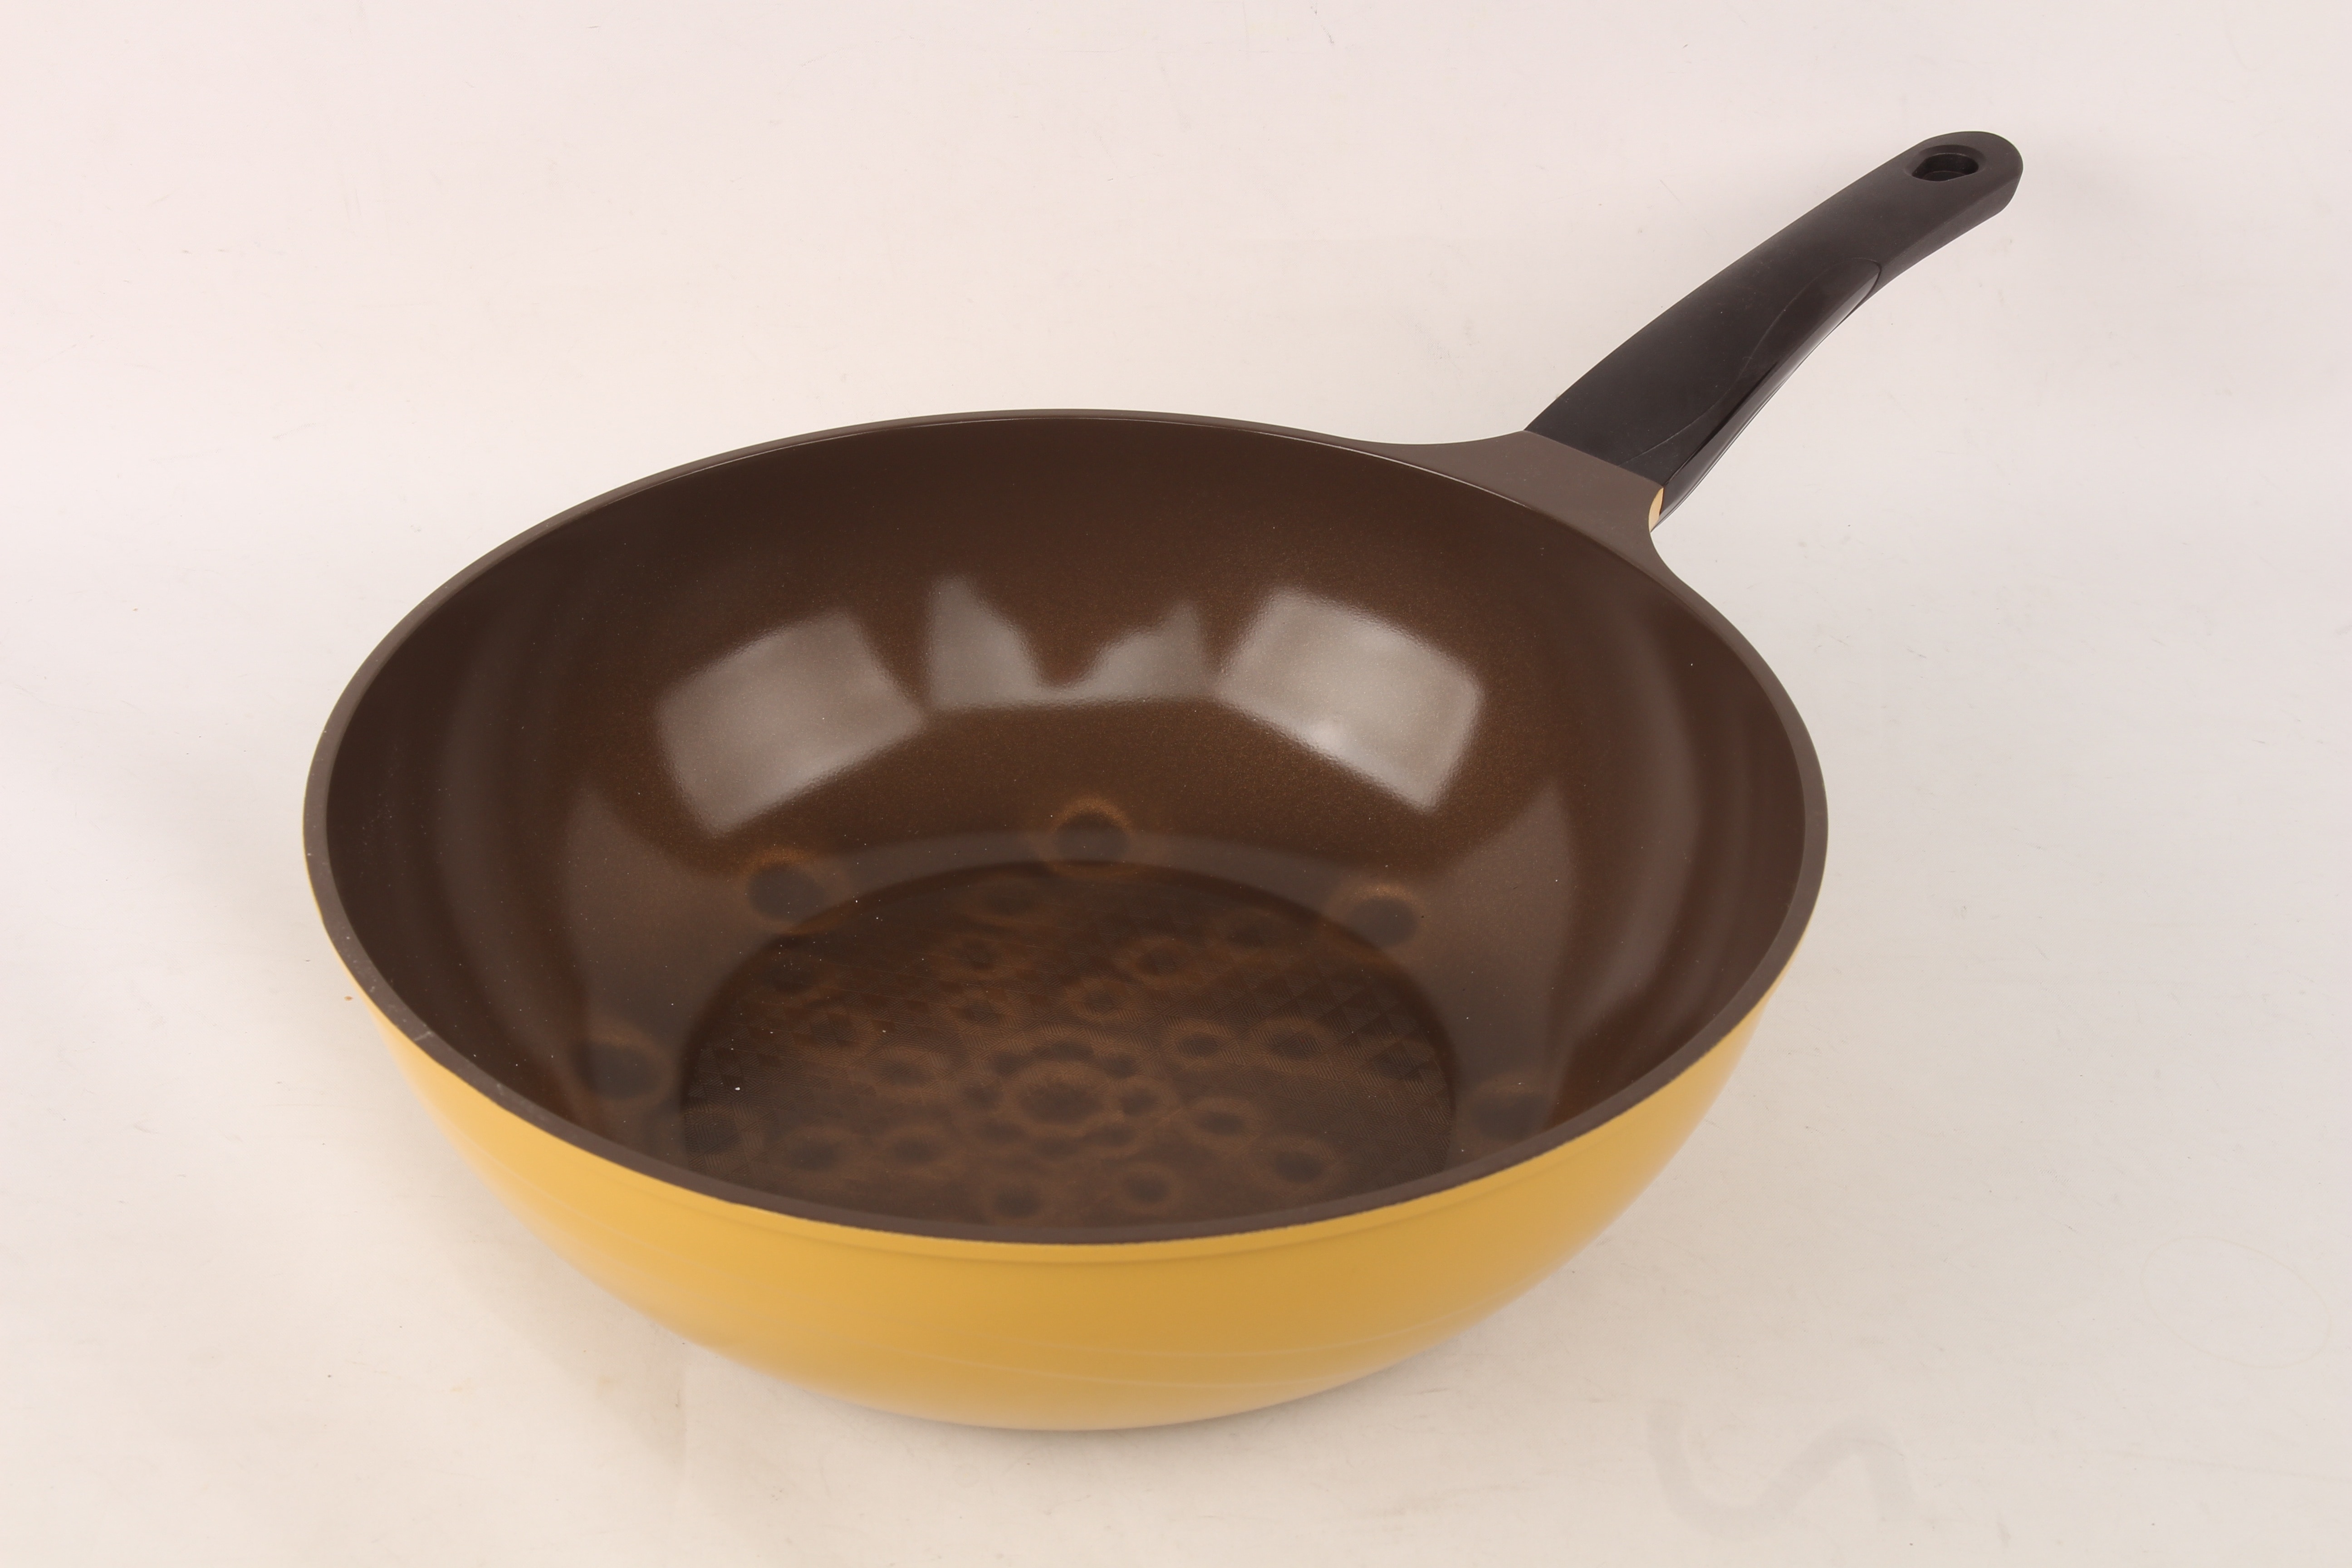 yellow and black handled pan